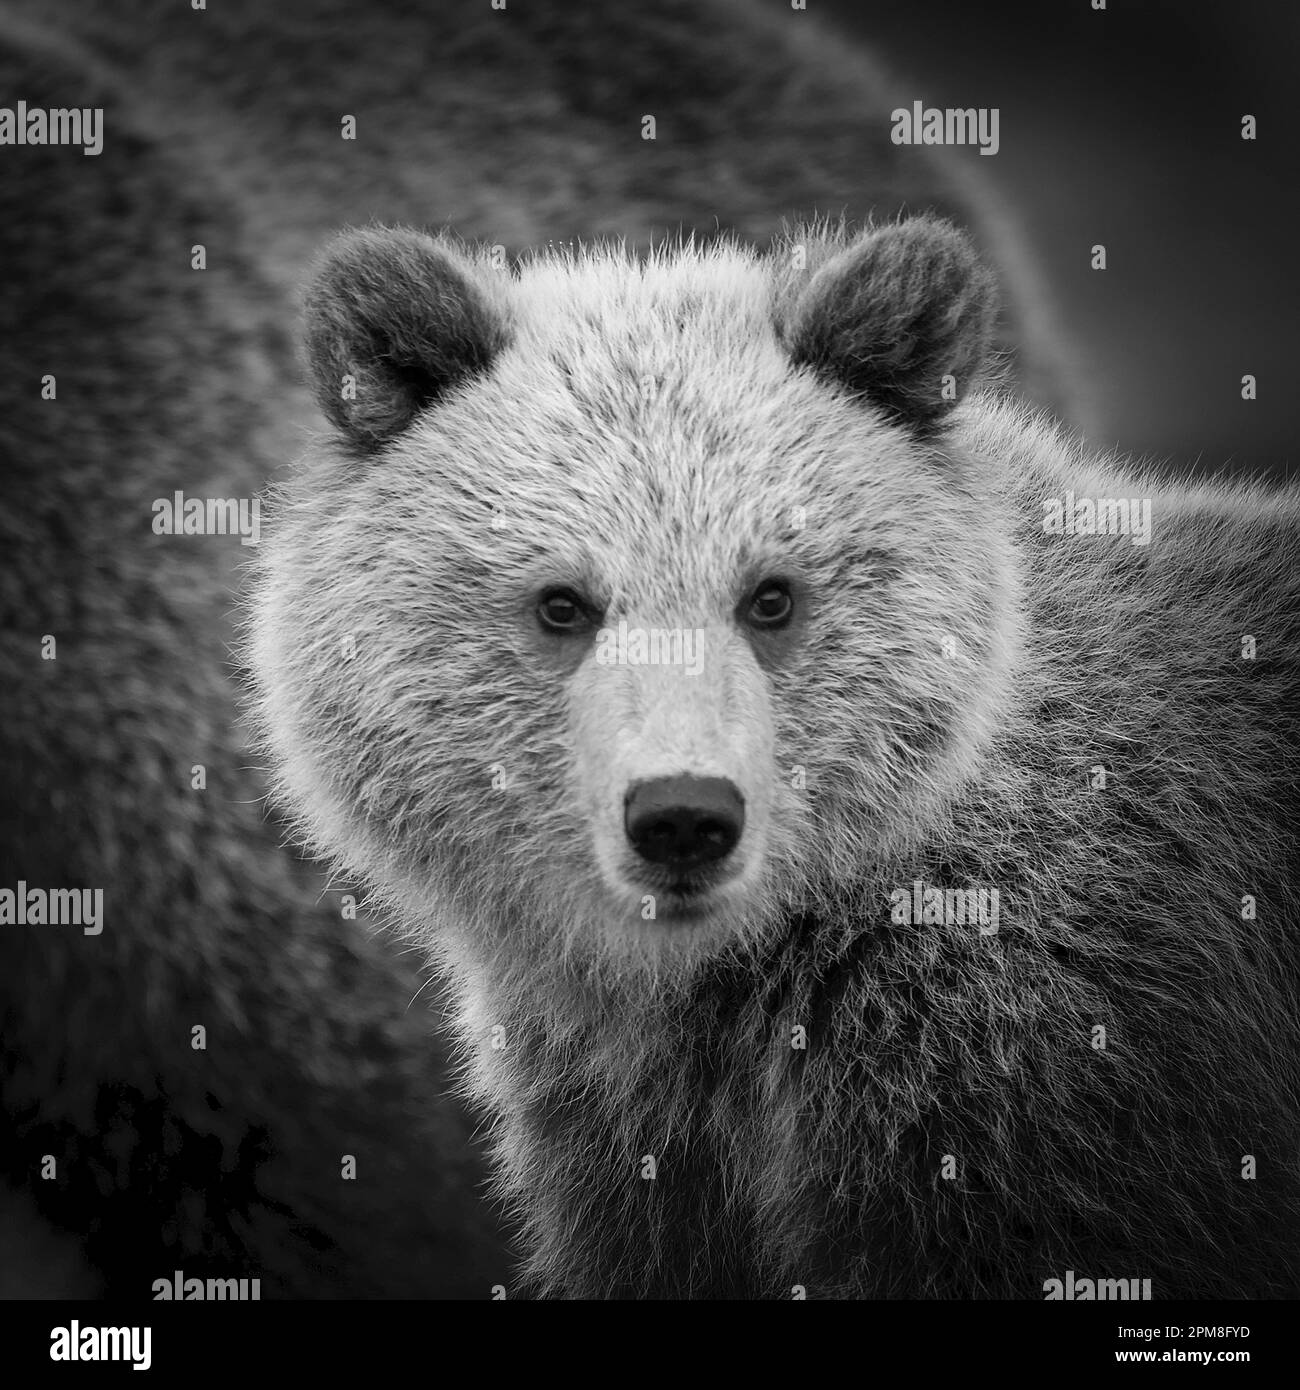 Finlandia, Ruhtinansalmi, vicino a Suomussalmi, orso bruno. Ursus arctos. Cub. Immagine in bianco e nero. Foto Stock